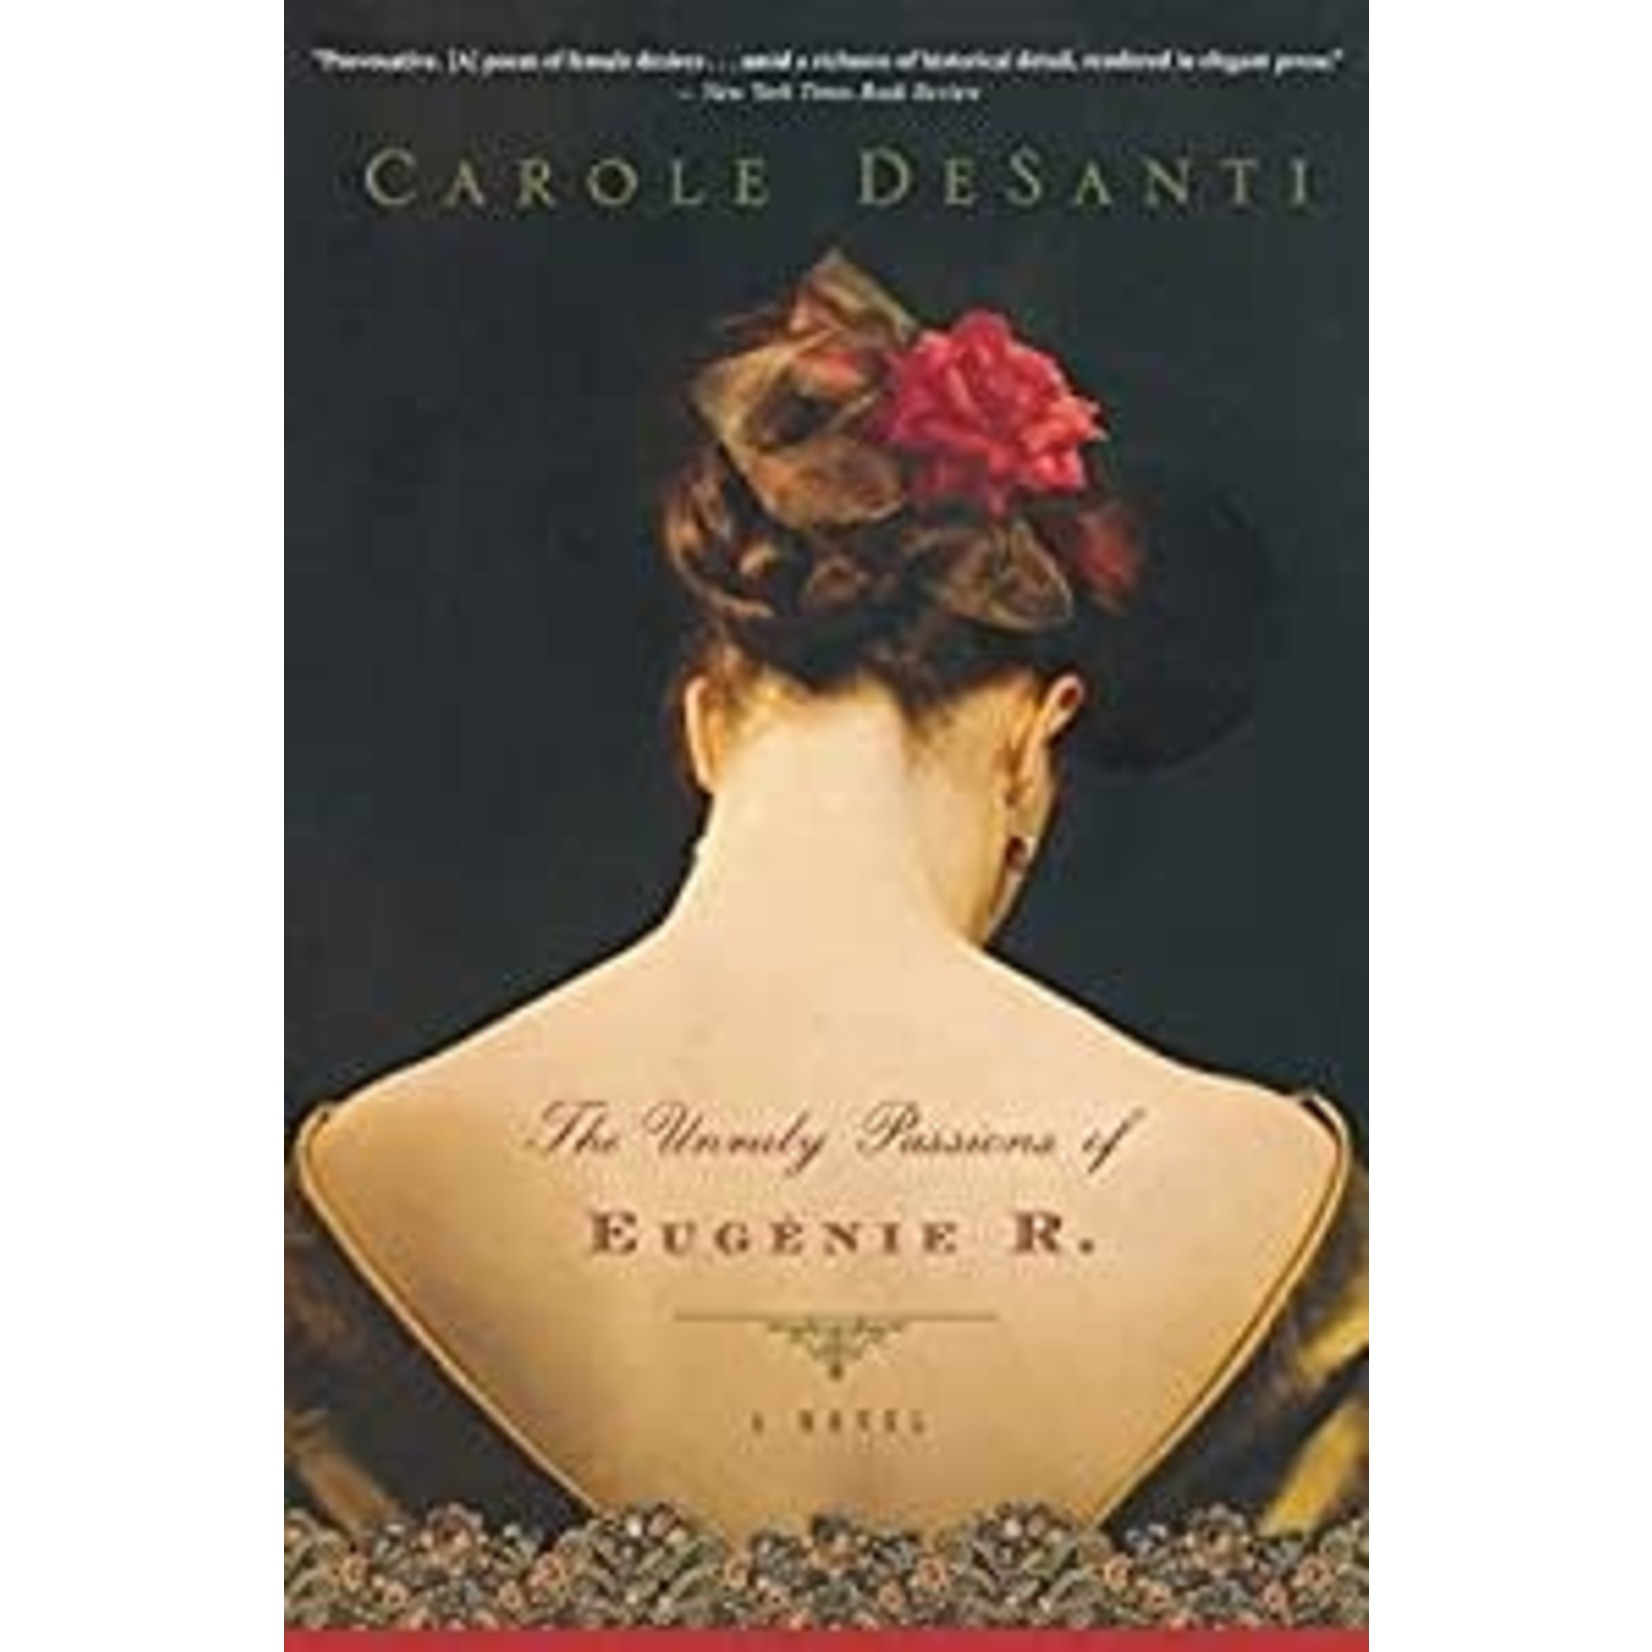 DeSanti, Carole DeSanti, Carole - The Unruly Passions of Eugénie R.